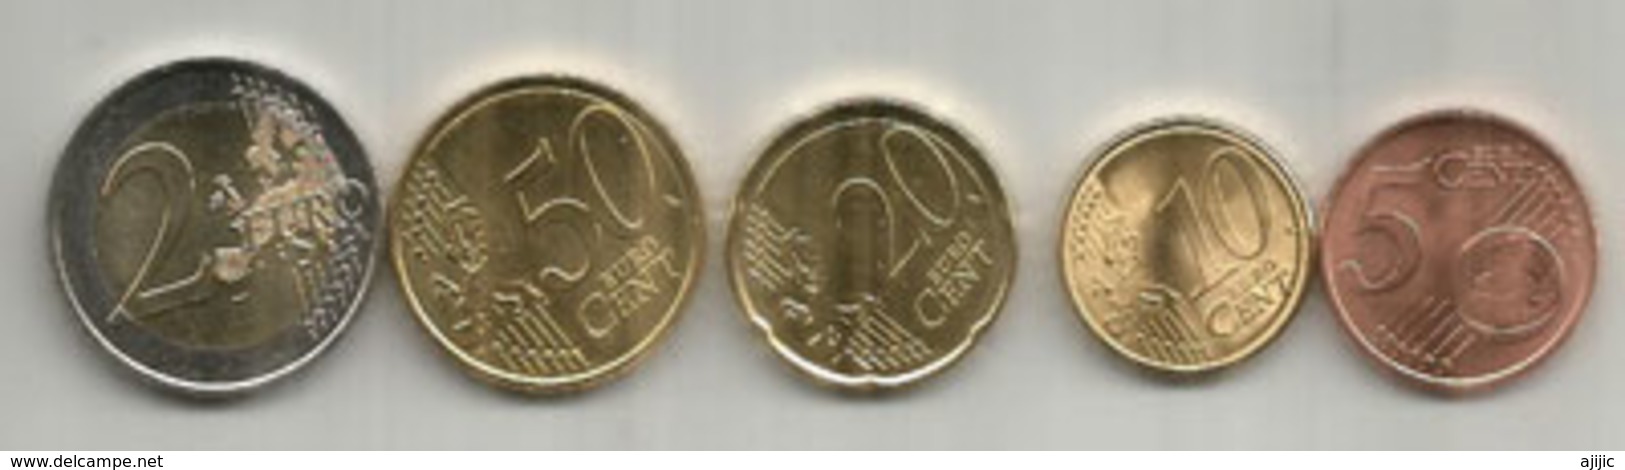 Monnaies € EUR ANDORRA 2017:  5C. 10C. 20C. 50C. 2,00 € - Andorra